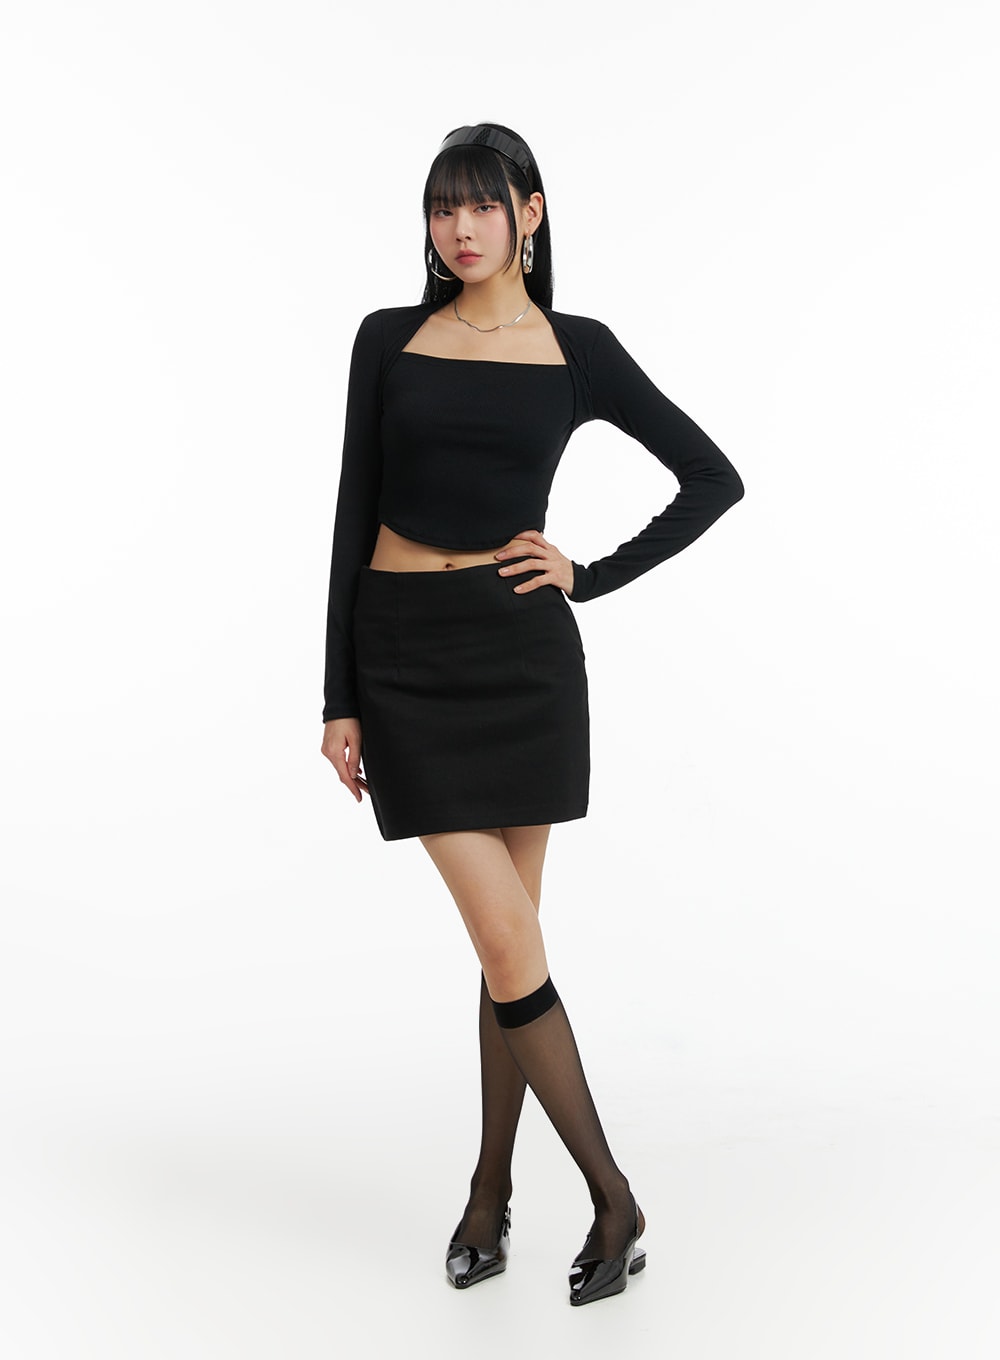 basic-mini-skirt-if402